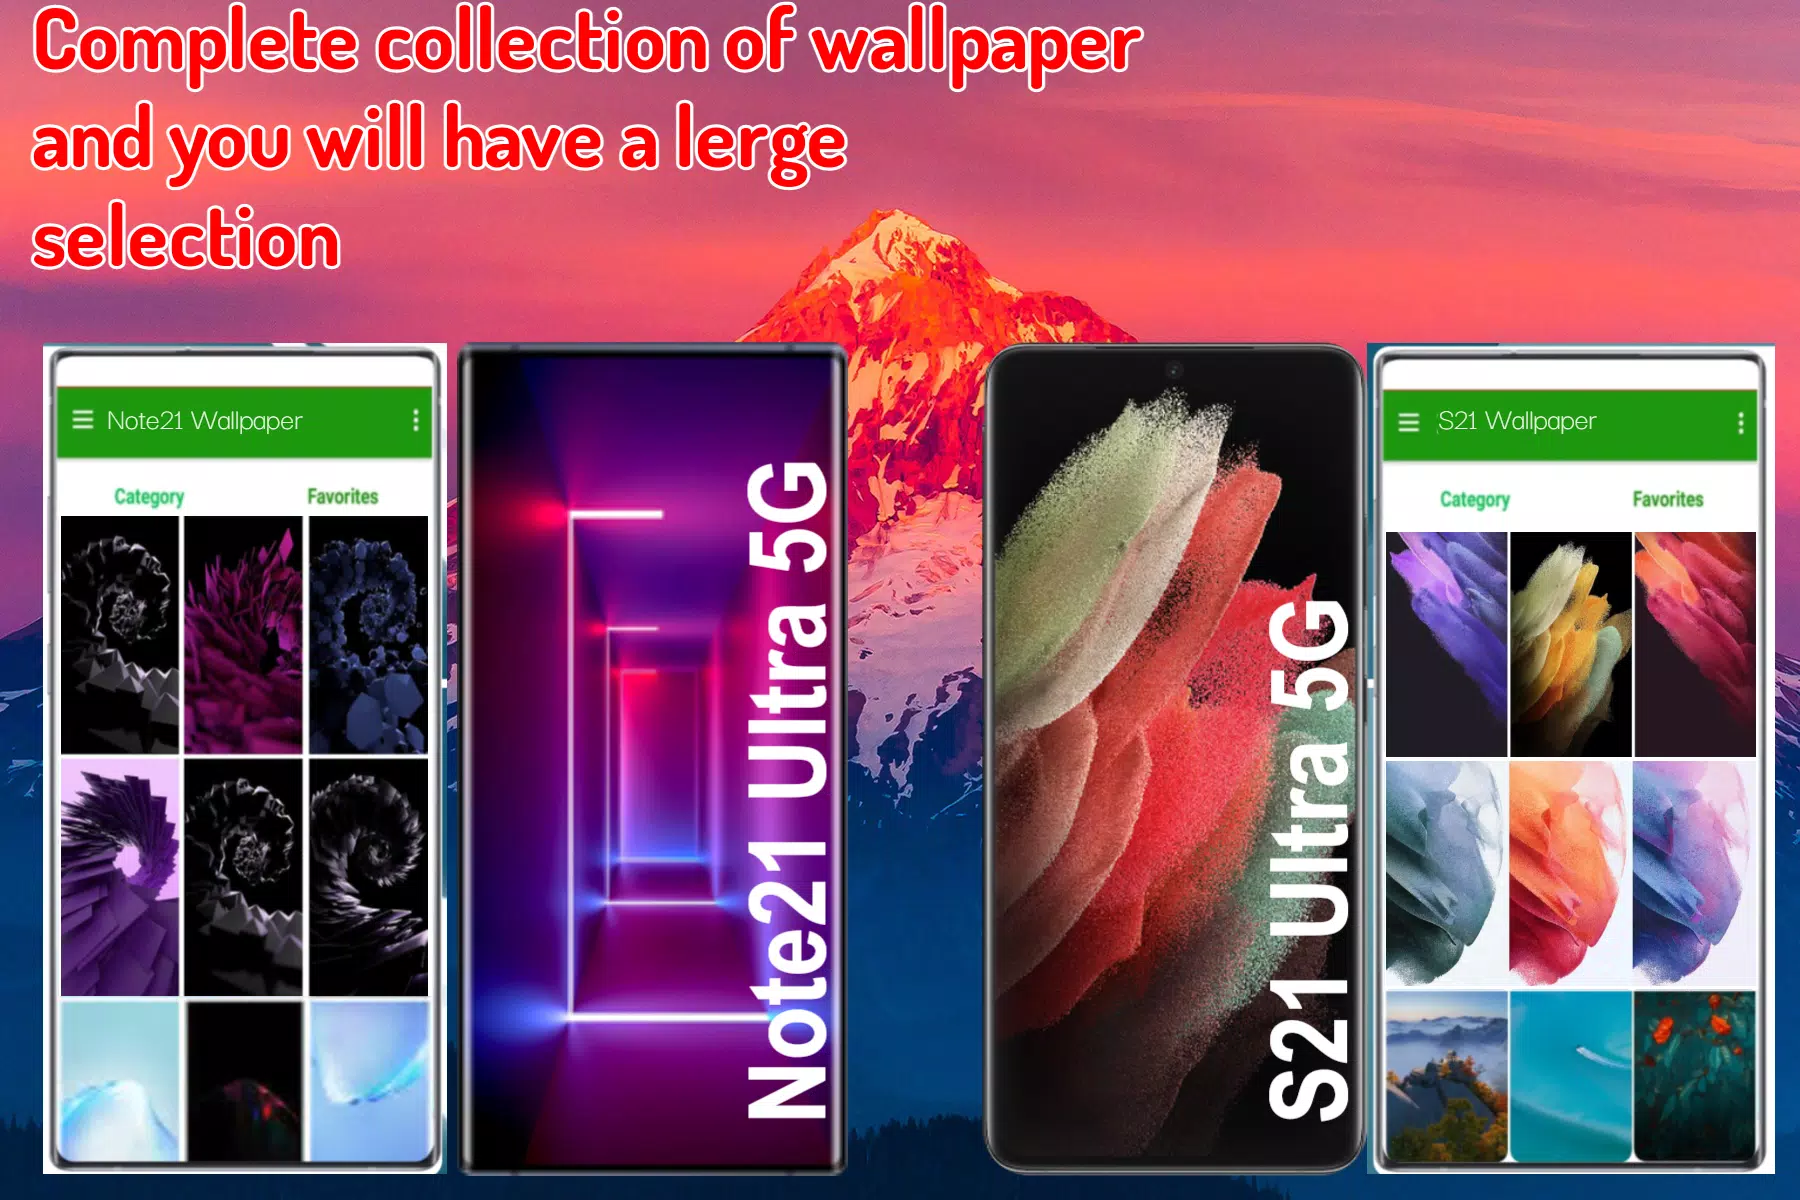 Galaxy S22 Ultra 5G Wallpaper APK: Tải về ngay ứng dụng hình nền mới nhất từ Samsung Galaxy S22 Ultra 5G và trang trí cho điện thoại của bạn. Sẽ không còn gì tuyệt vời hơn khi có thể sở hữu những hình nền đẹp nhất về thiên nhiên, chân dung và rất nhiều lựa chọn khác. Xem ngay trên trang web của chúng tôi.